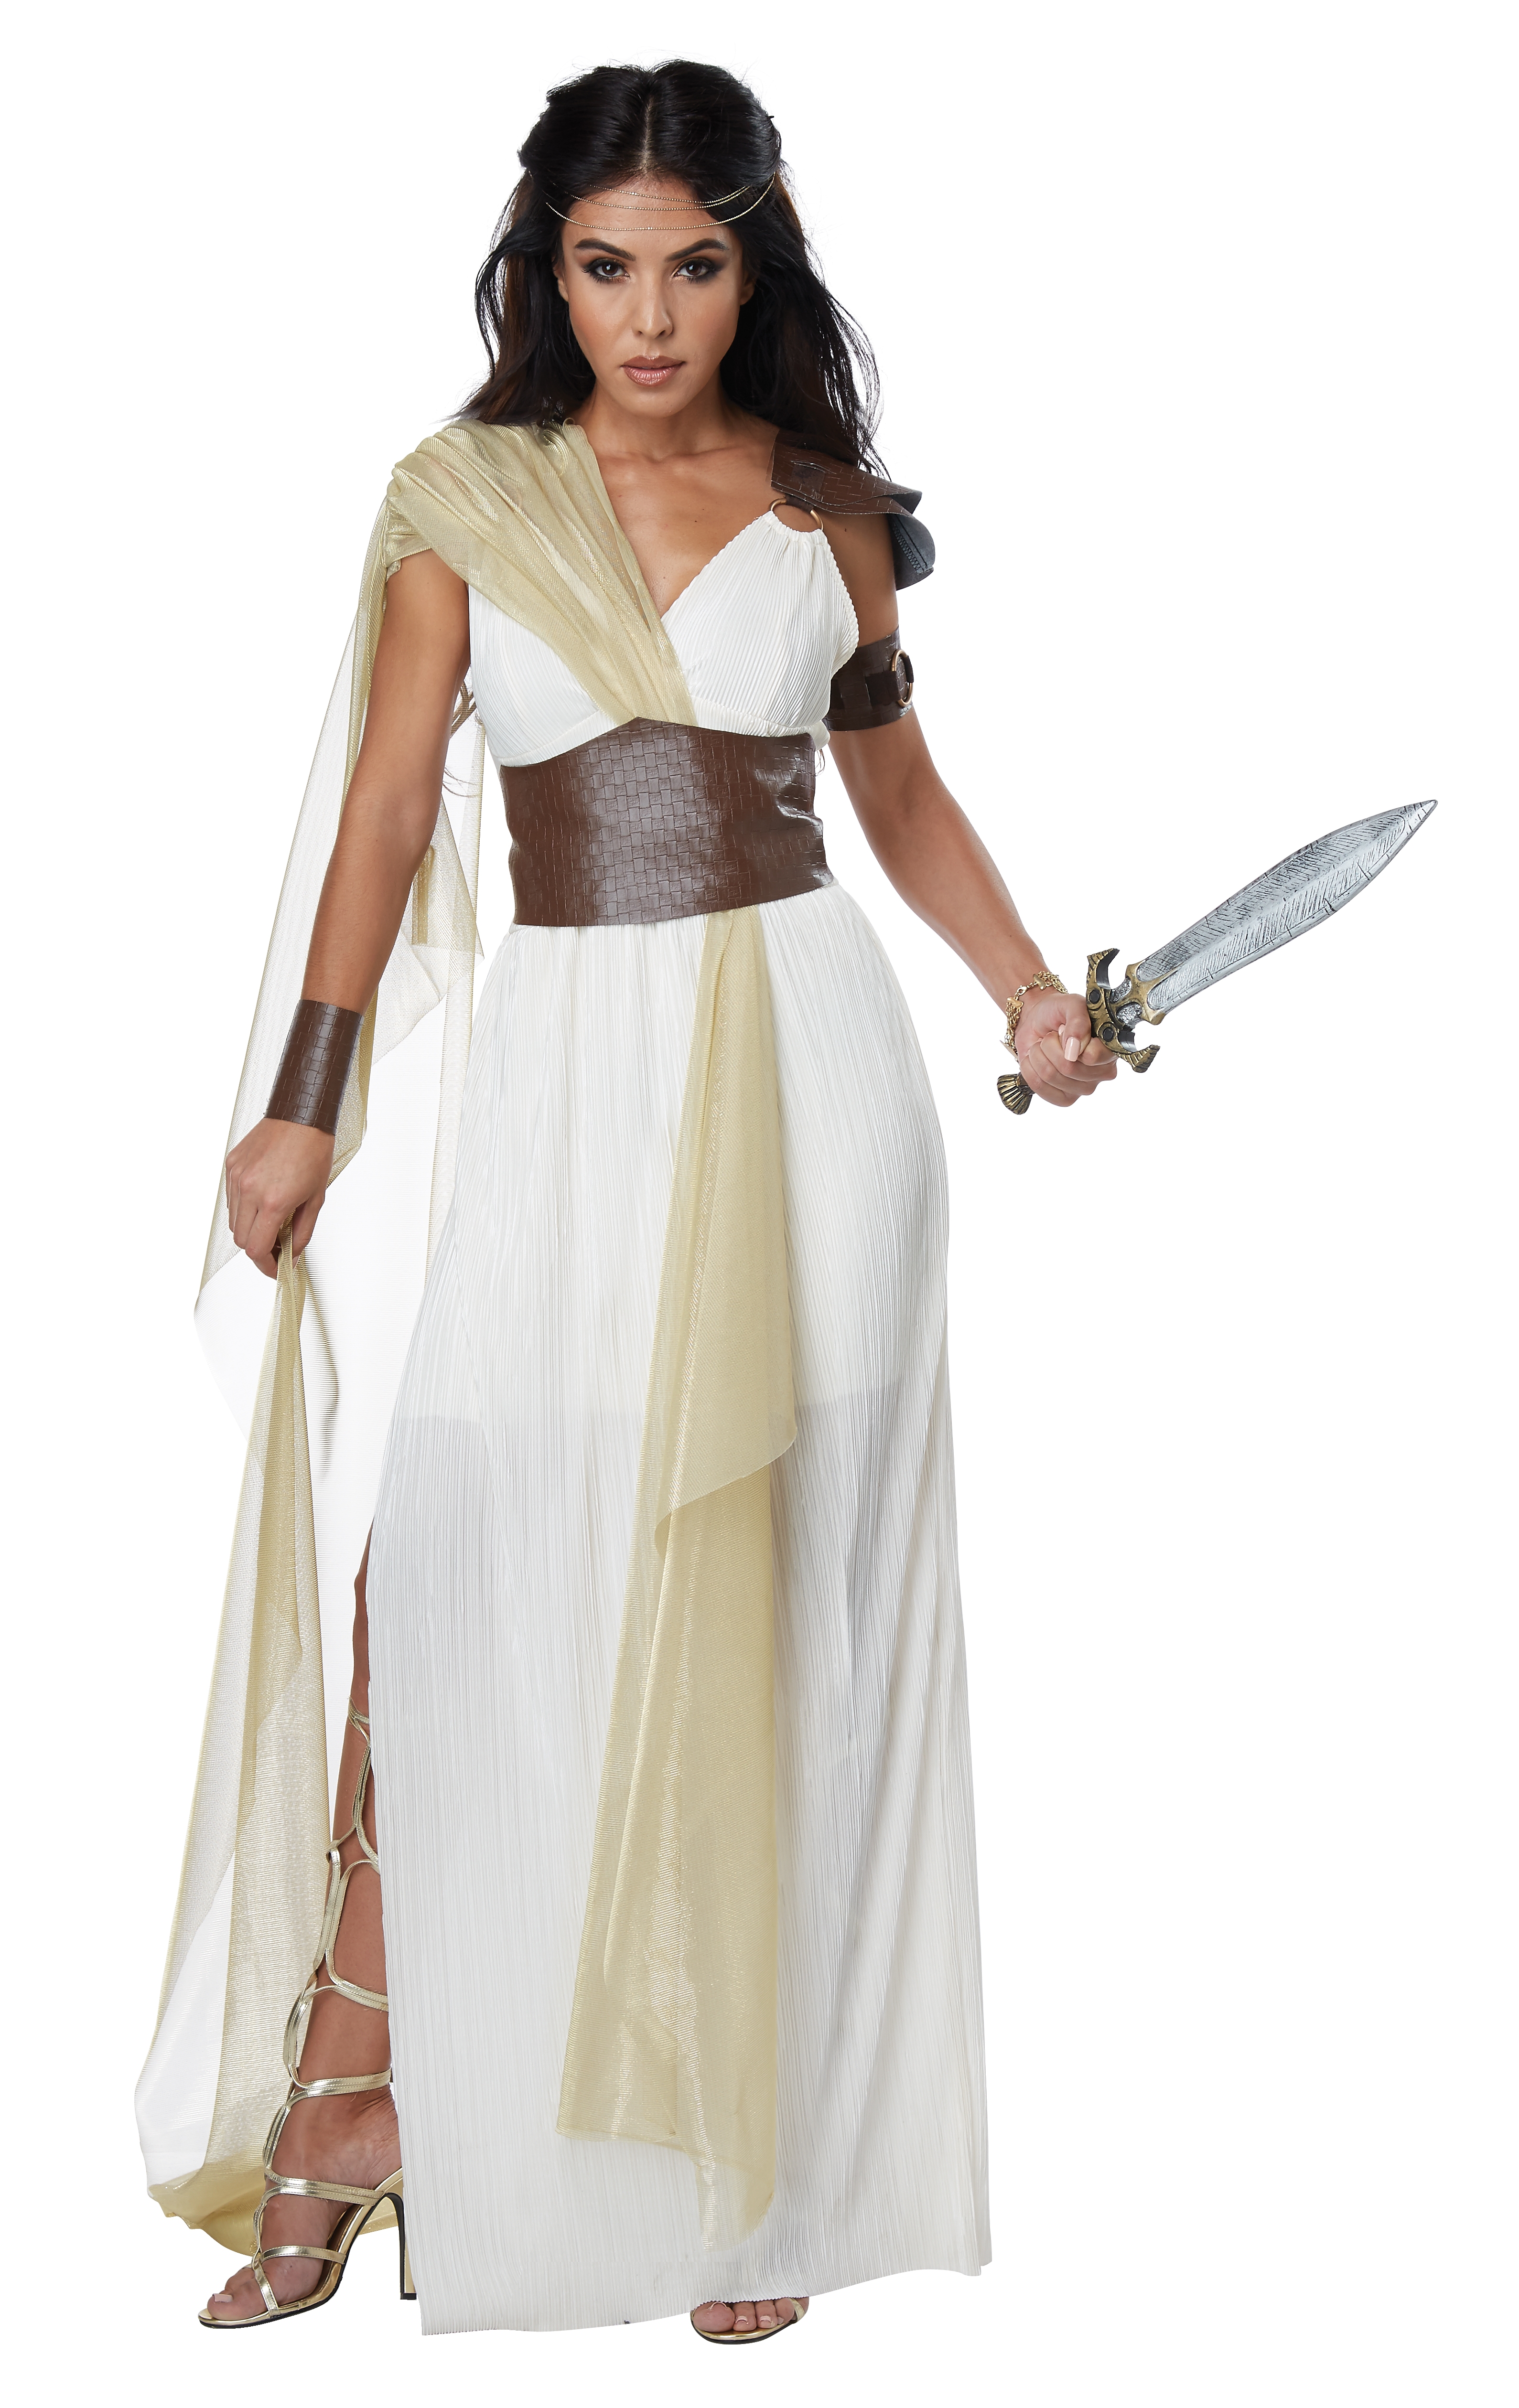 Костюм Спартанской Королевы состоит из платья в греческом стиле, накидки из...